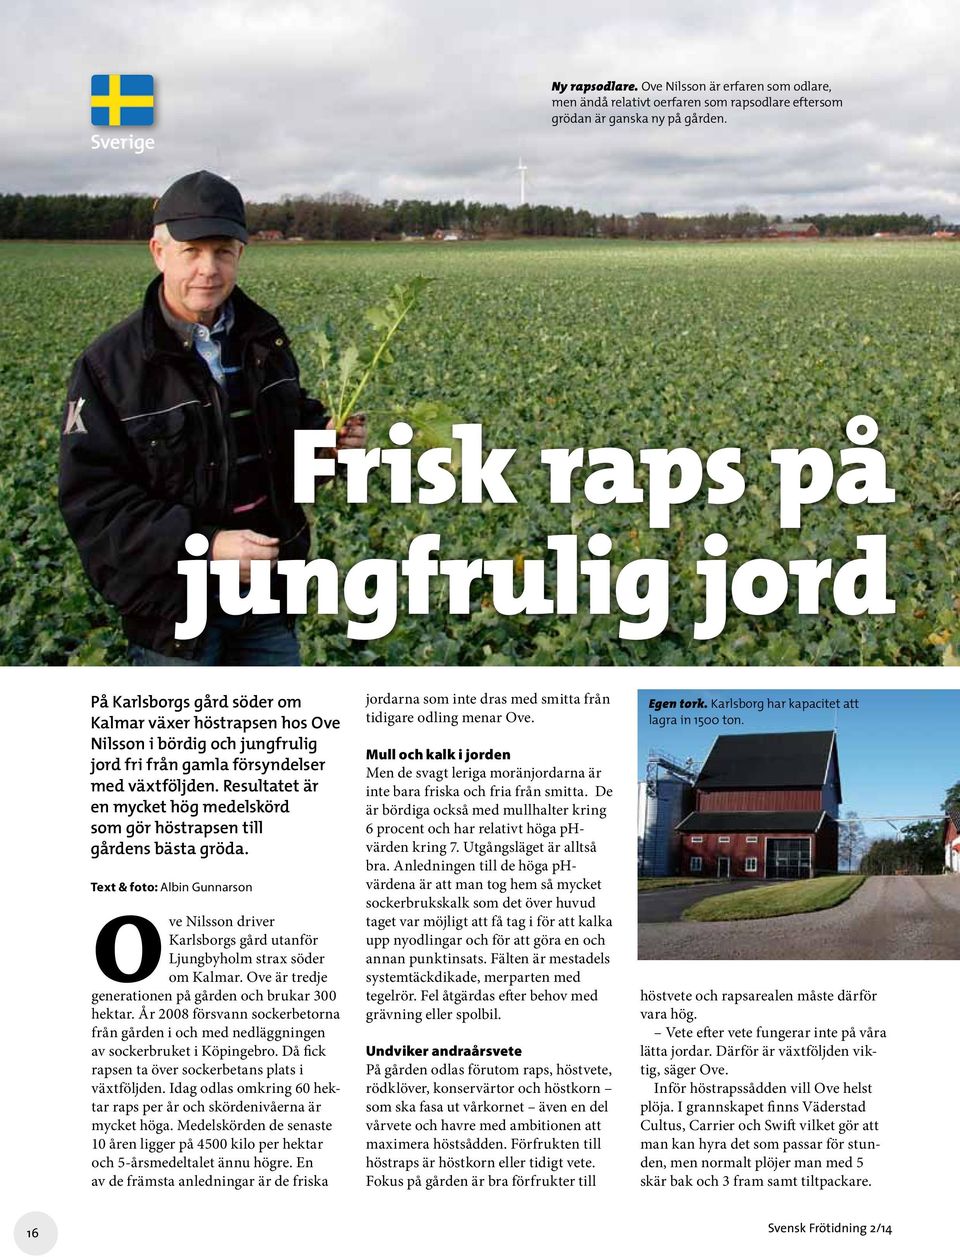 Resultatet är en mycket hög medelskörd som gör höstrapsen till gårdens bästa gröda. Text & foto: Albin Gunnarson Ove Nilsson driver Karlsborgs gård utanför Ljungbyholm strax söder om Kalmar.